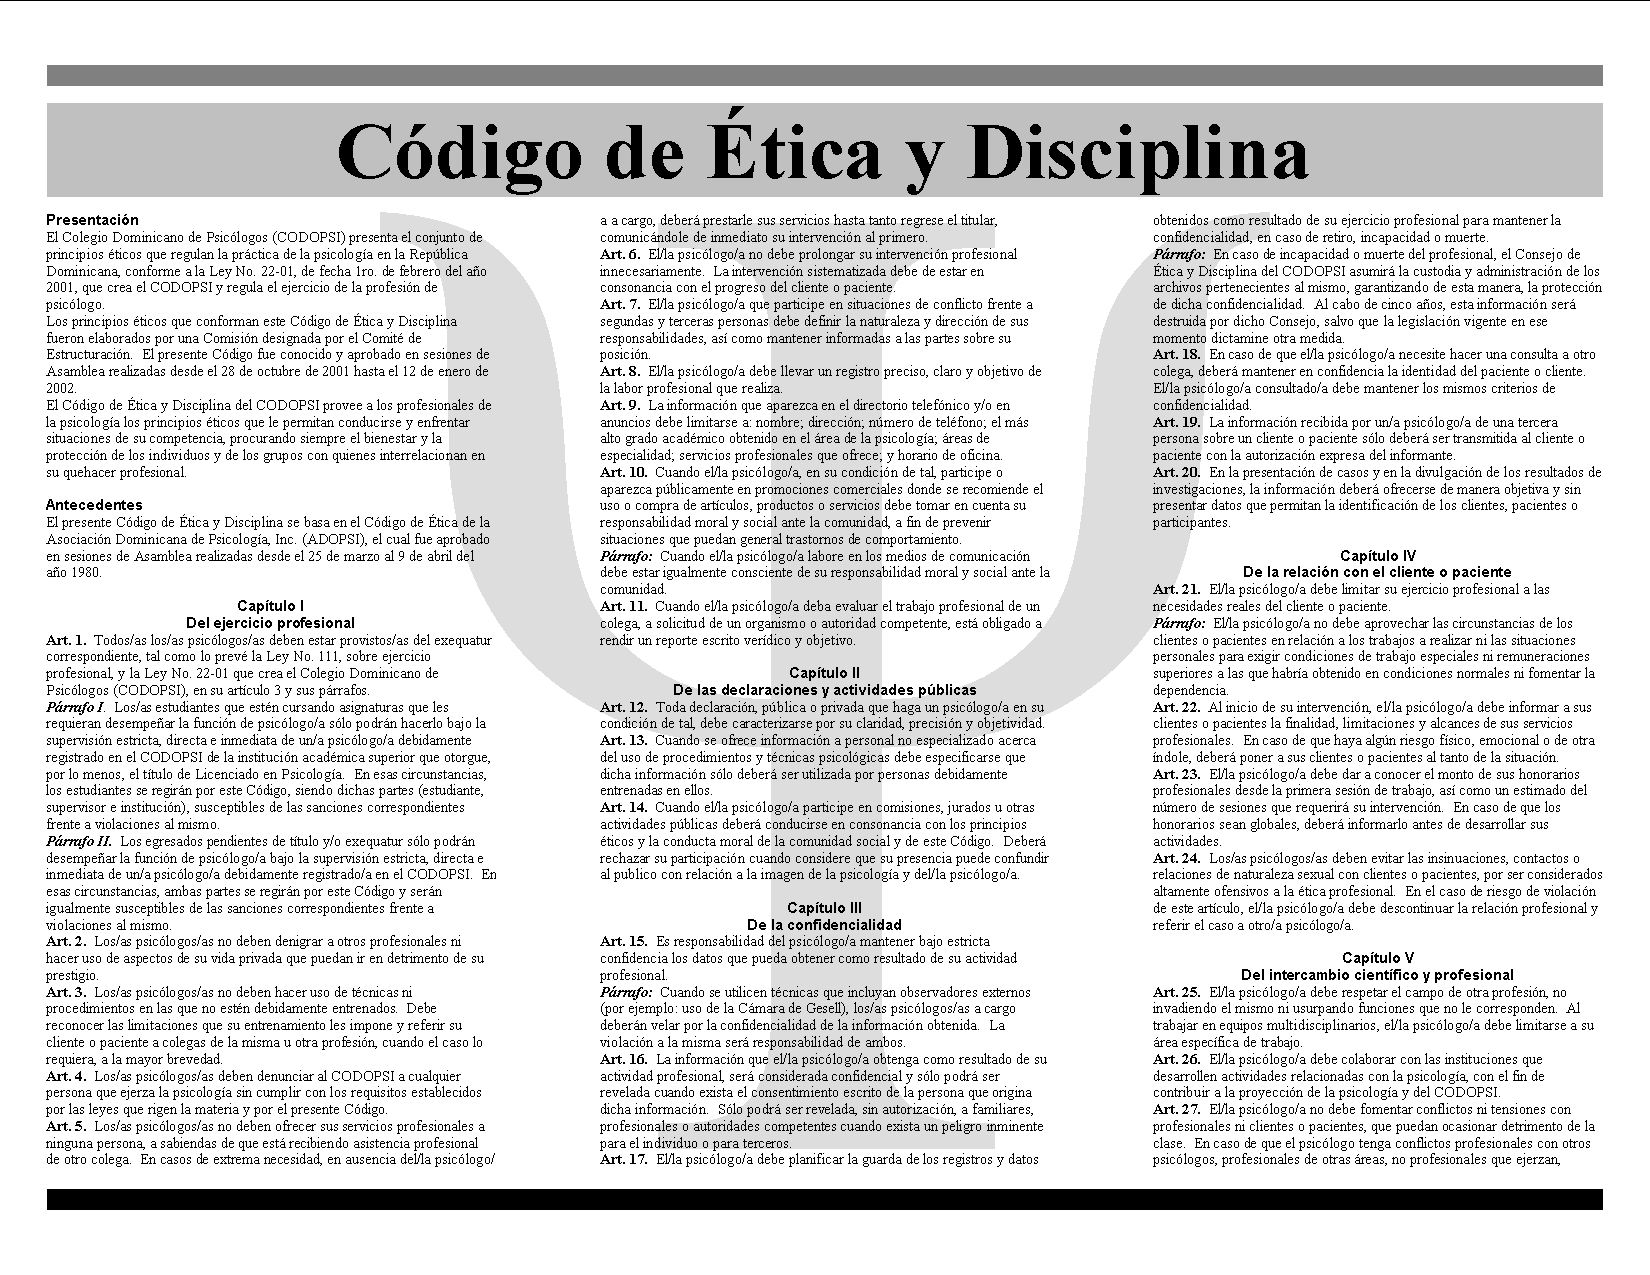 Código de Ética y Disciplina del CODOPSI, P. 2